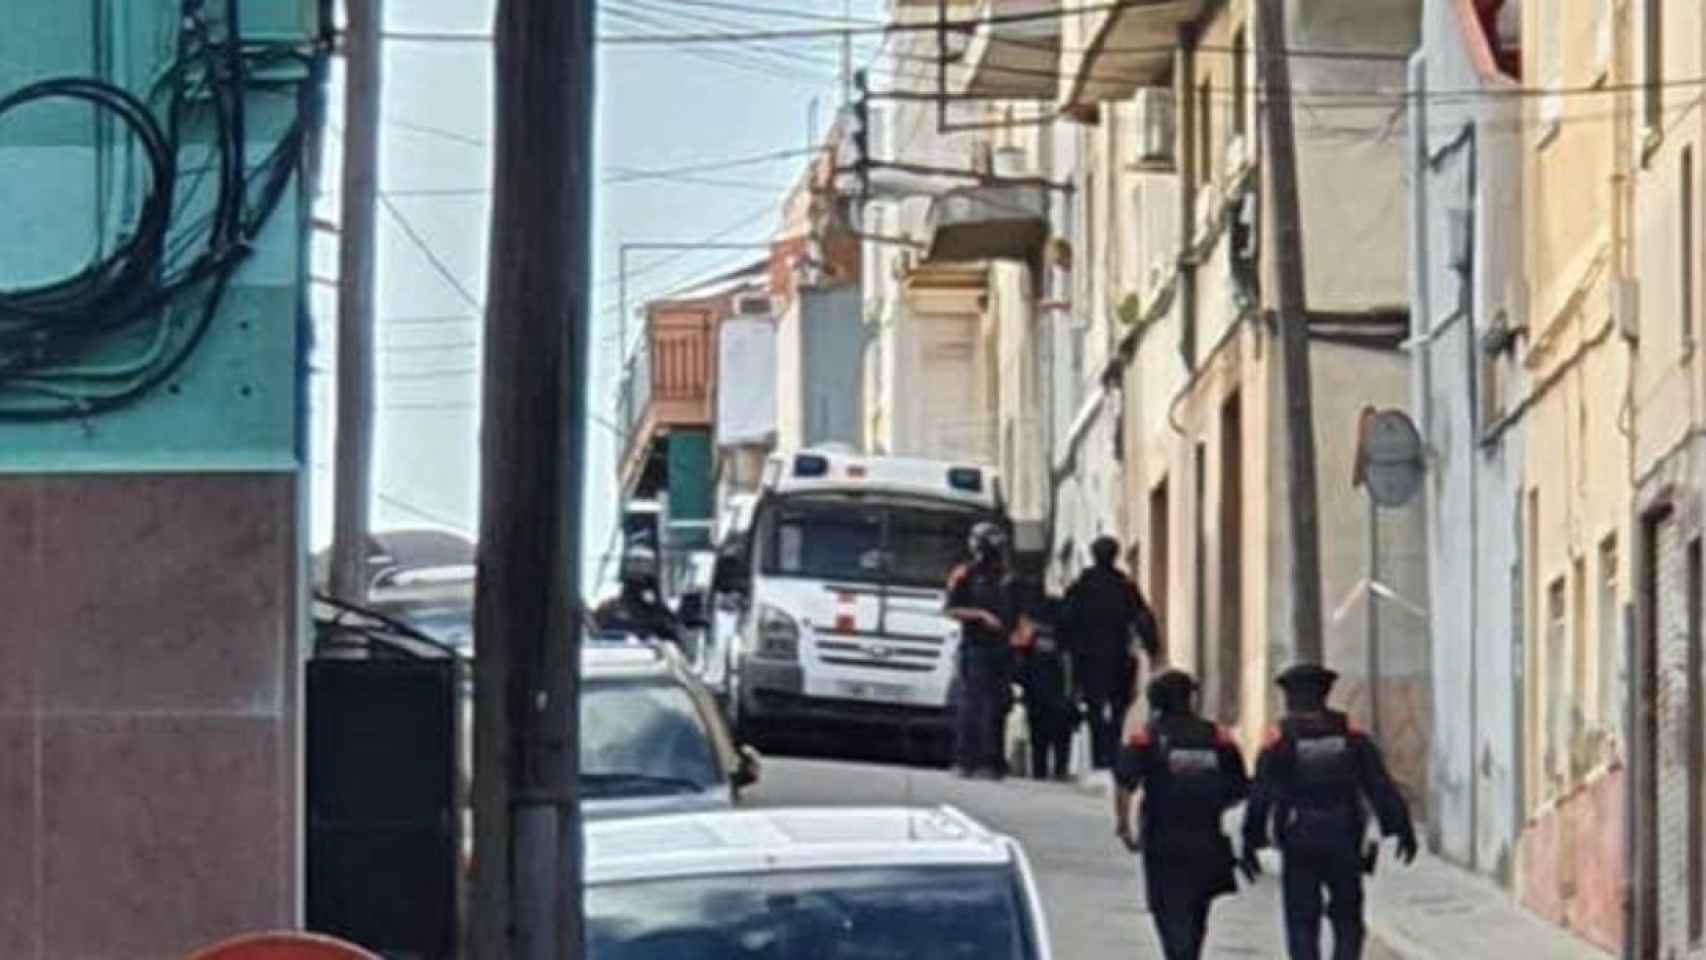 Agentes de los mossos en el operativo de esta mañana en Badalona / METRÓPOLI ABIERTA